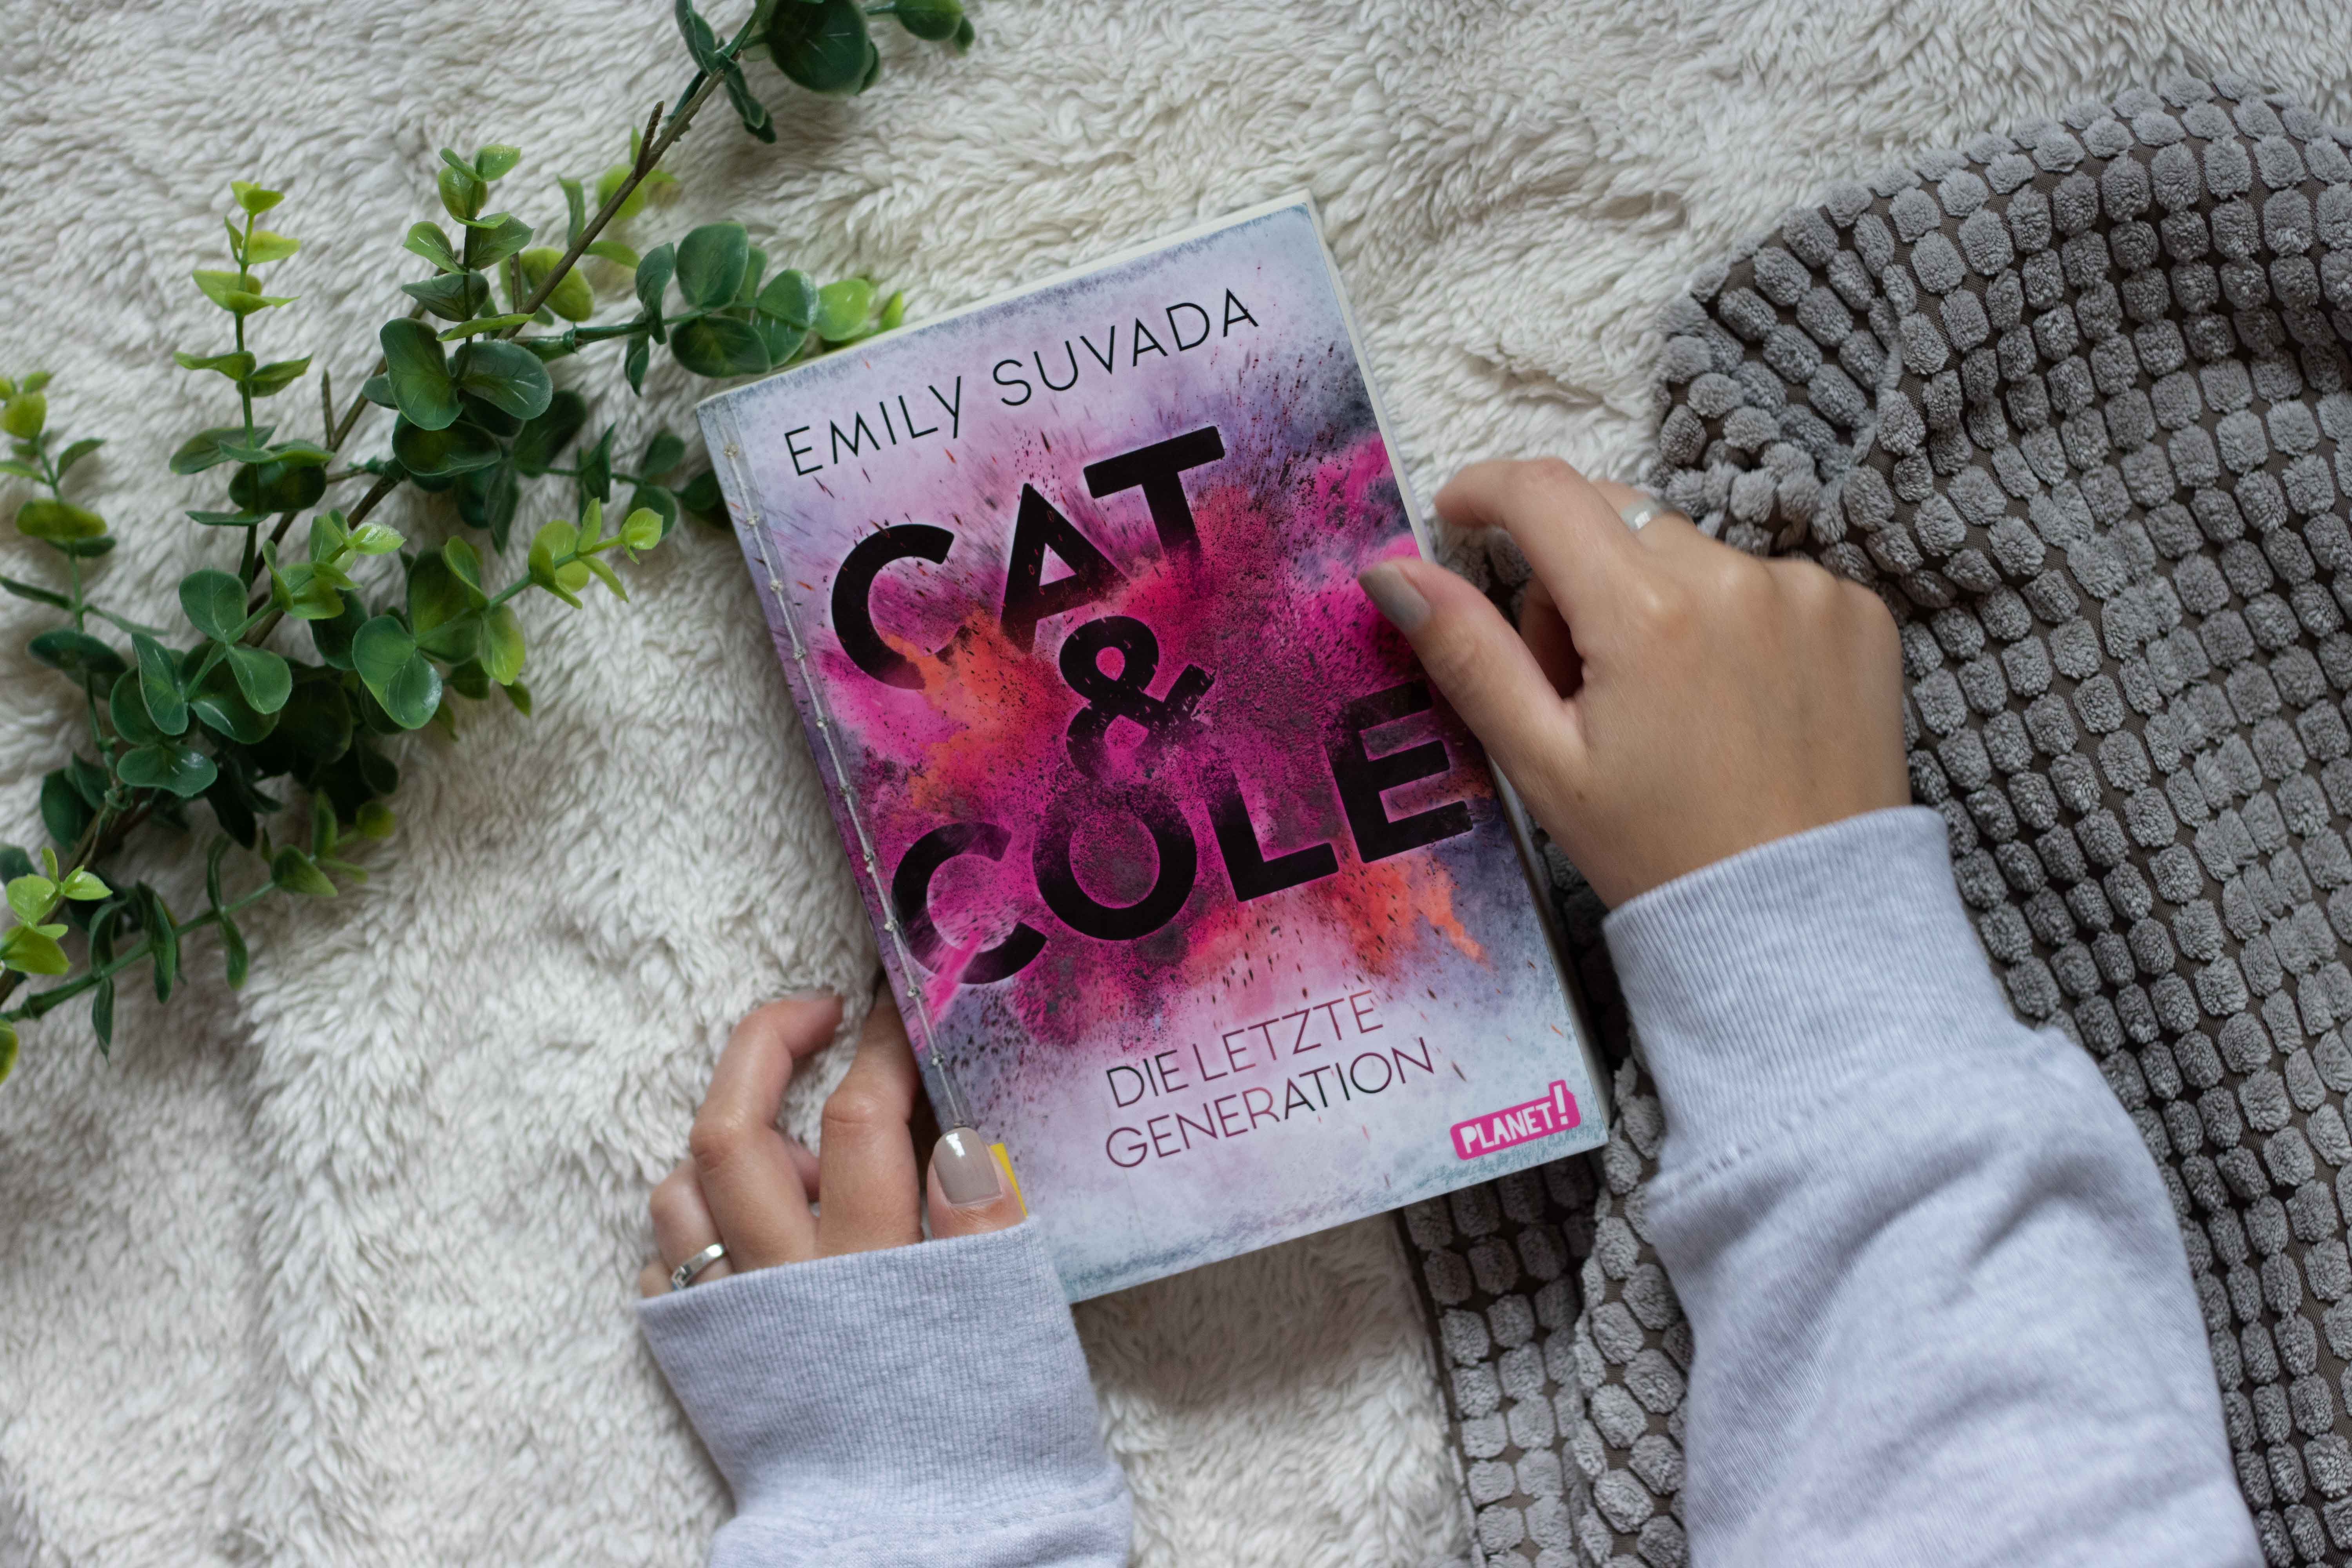 Cat & Cole – Die letzte Generation | Emily Suvada